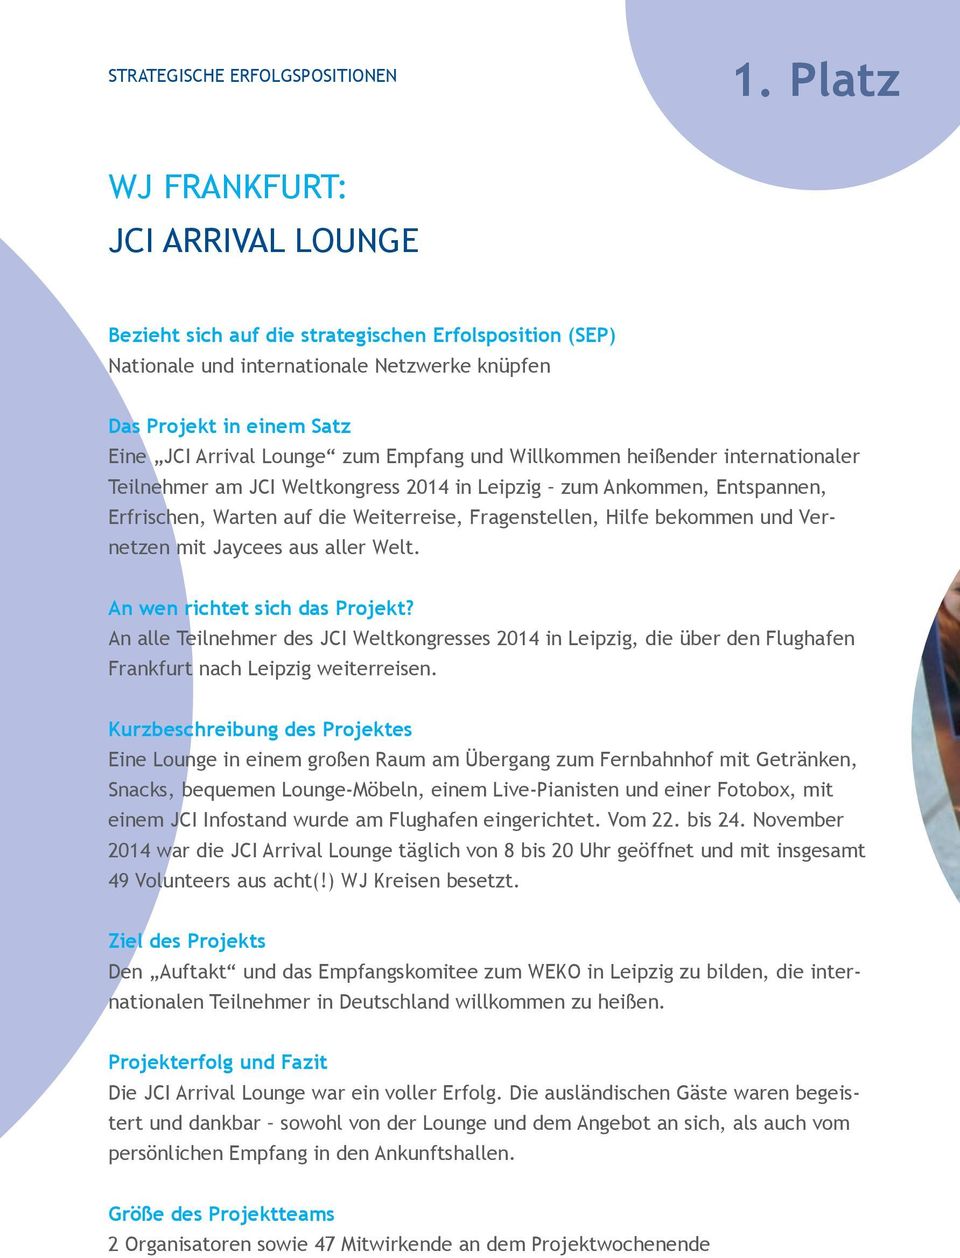 Empfang und Willkommen heißender internationaler Teilnehmer am JCI Weltkongress 2014 in Leipzig zum Ankommen, Entspannen, Erfrischen, Warten auf die Weiterreise, Fragenstellen, Hilfe bekommen und